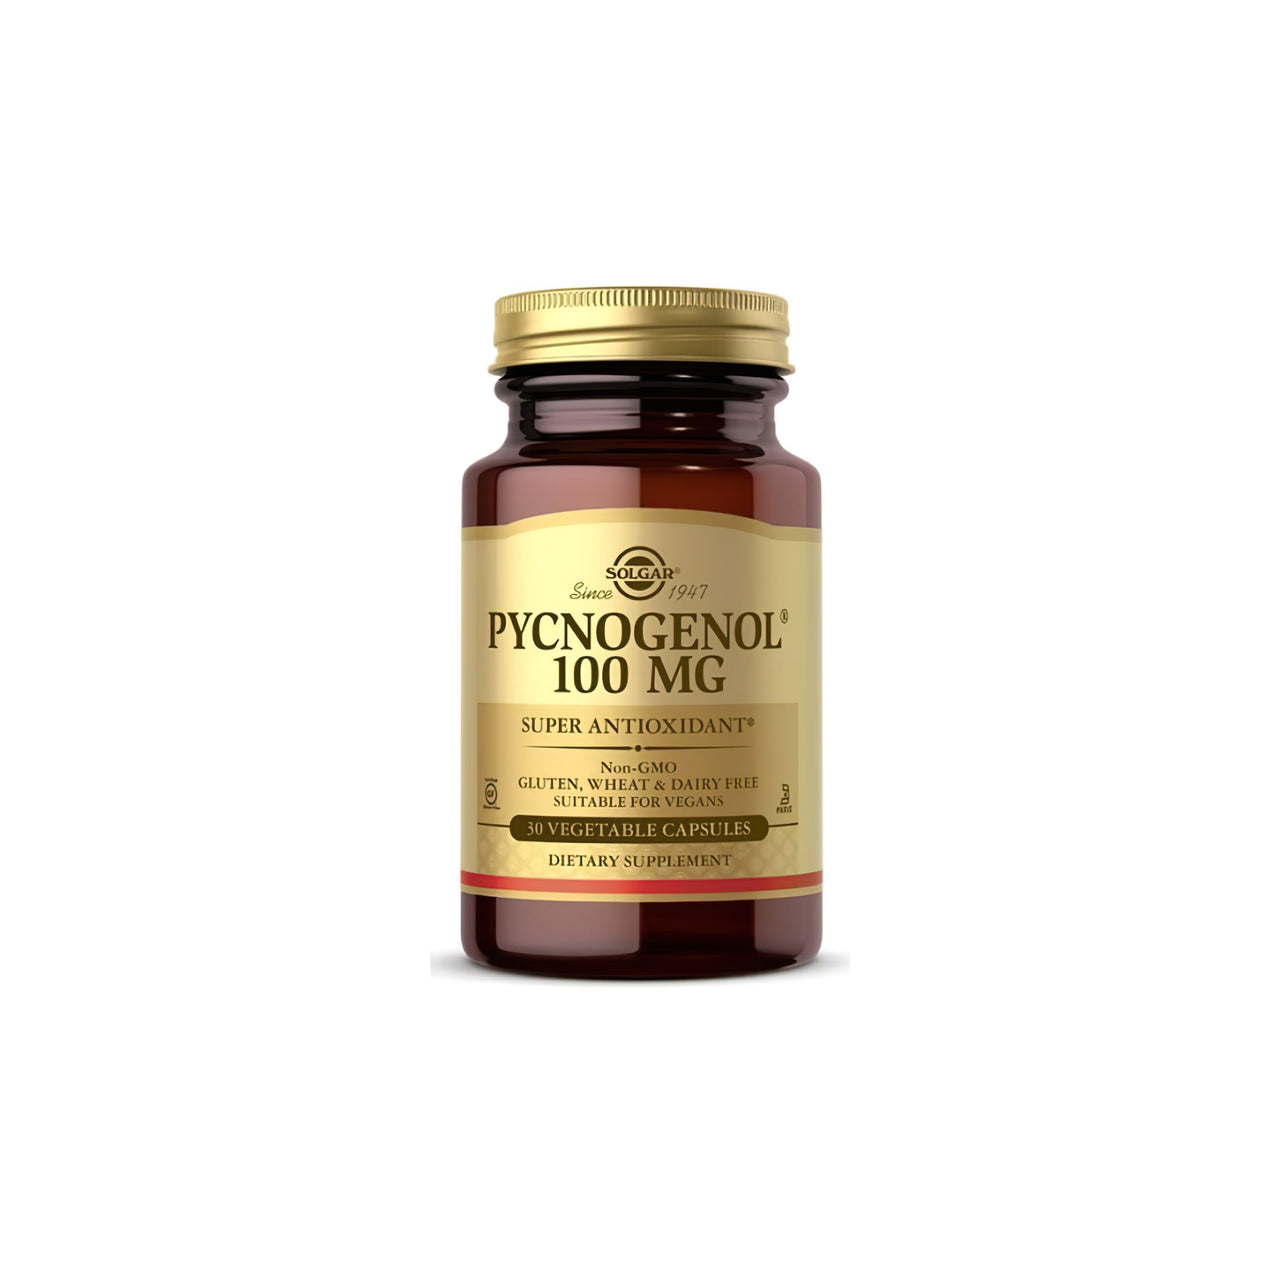 Pycnogenol 100 mg 30 vege capsules - front